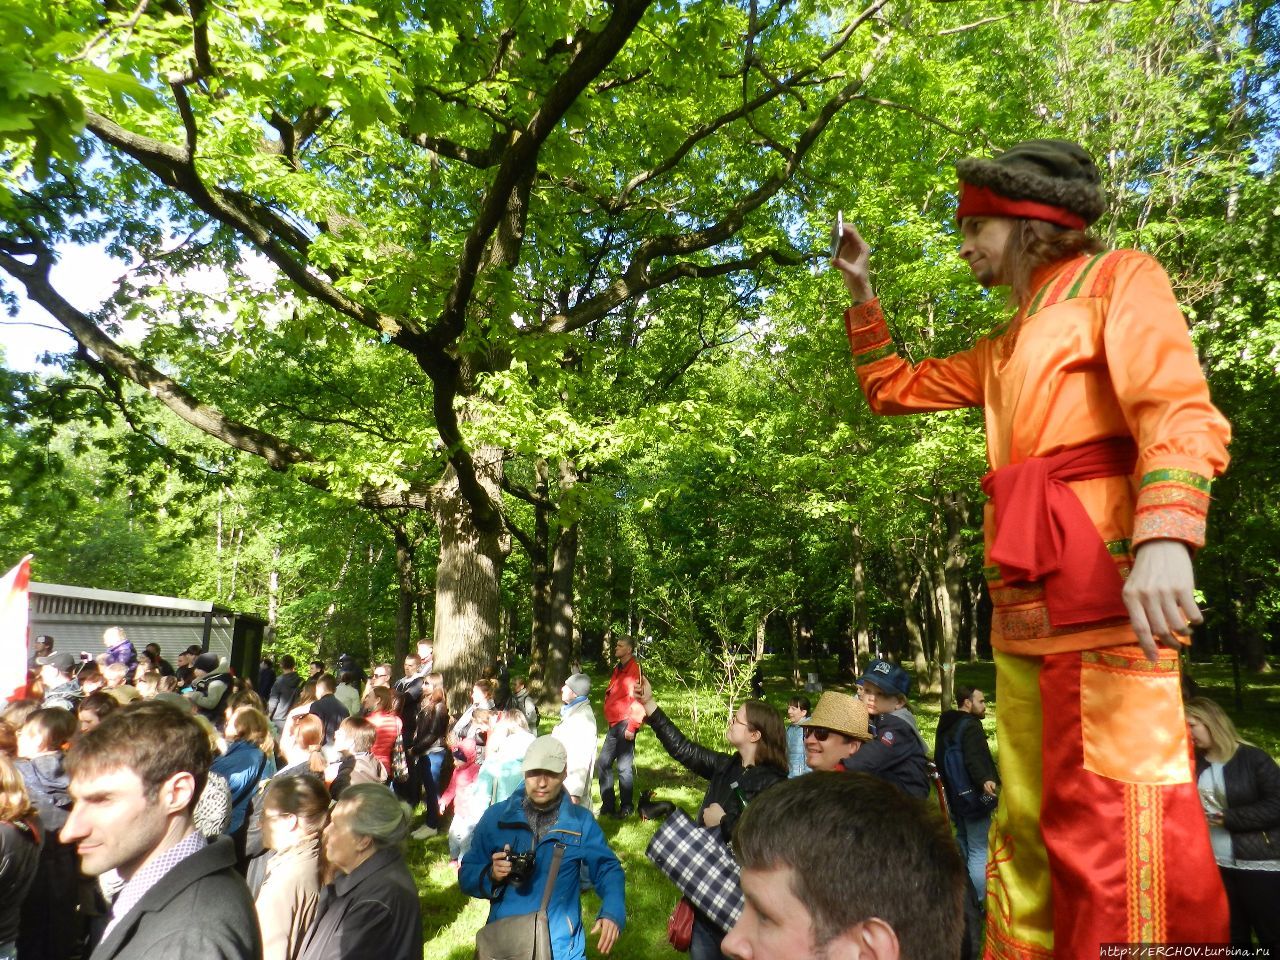 Бразильский карнавал в Измайловском парке Москва, Россия